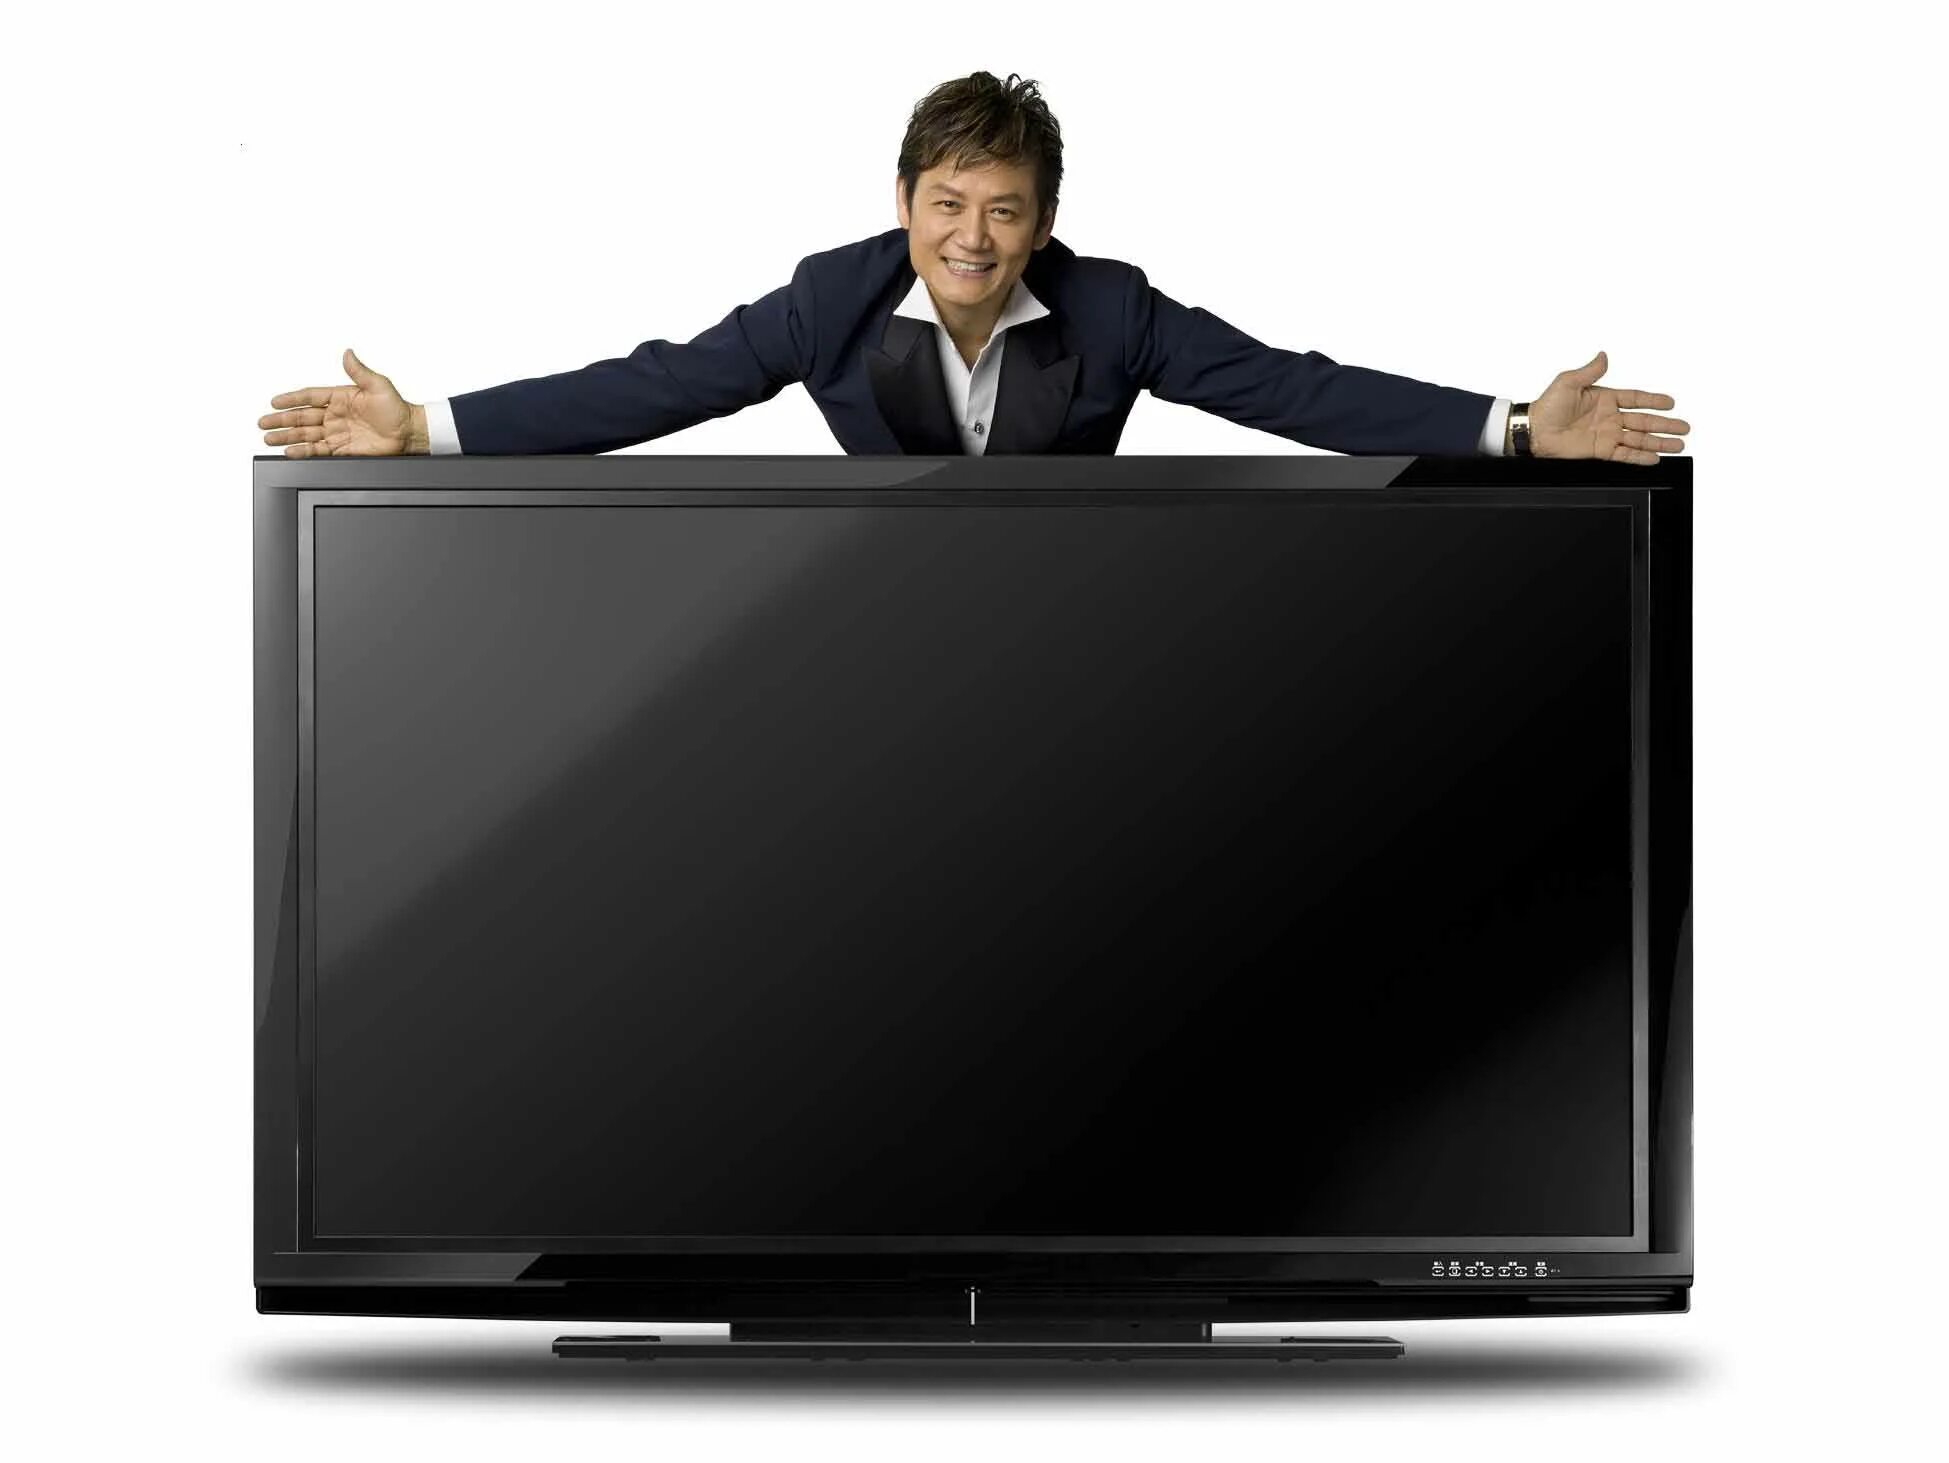 Найден новый телевизор. Телевизор. Человек телевизор. Большой телевизор. Много телевизоров.